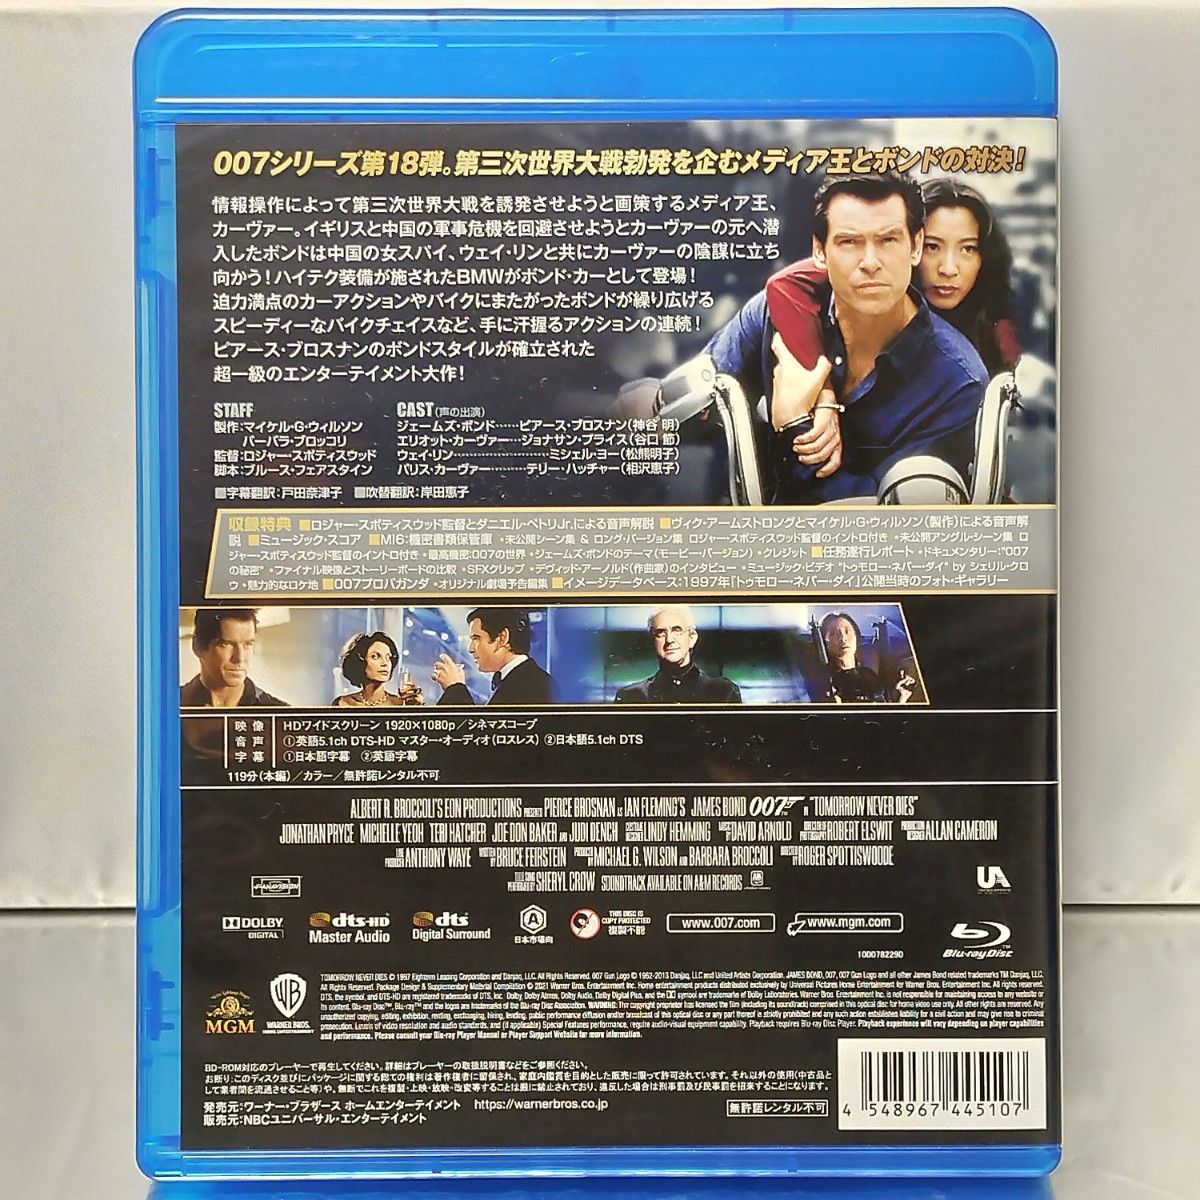 【Blu-ray】007 トゥモロー・ネバー・ダイ('97英)